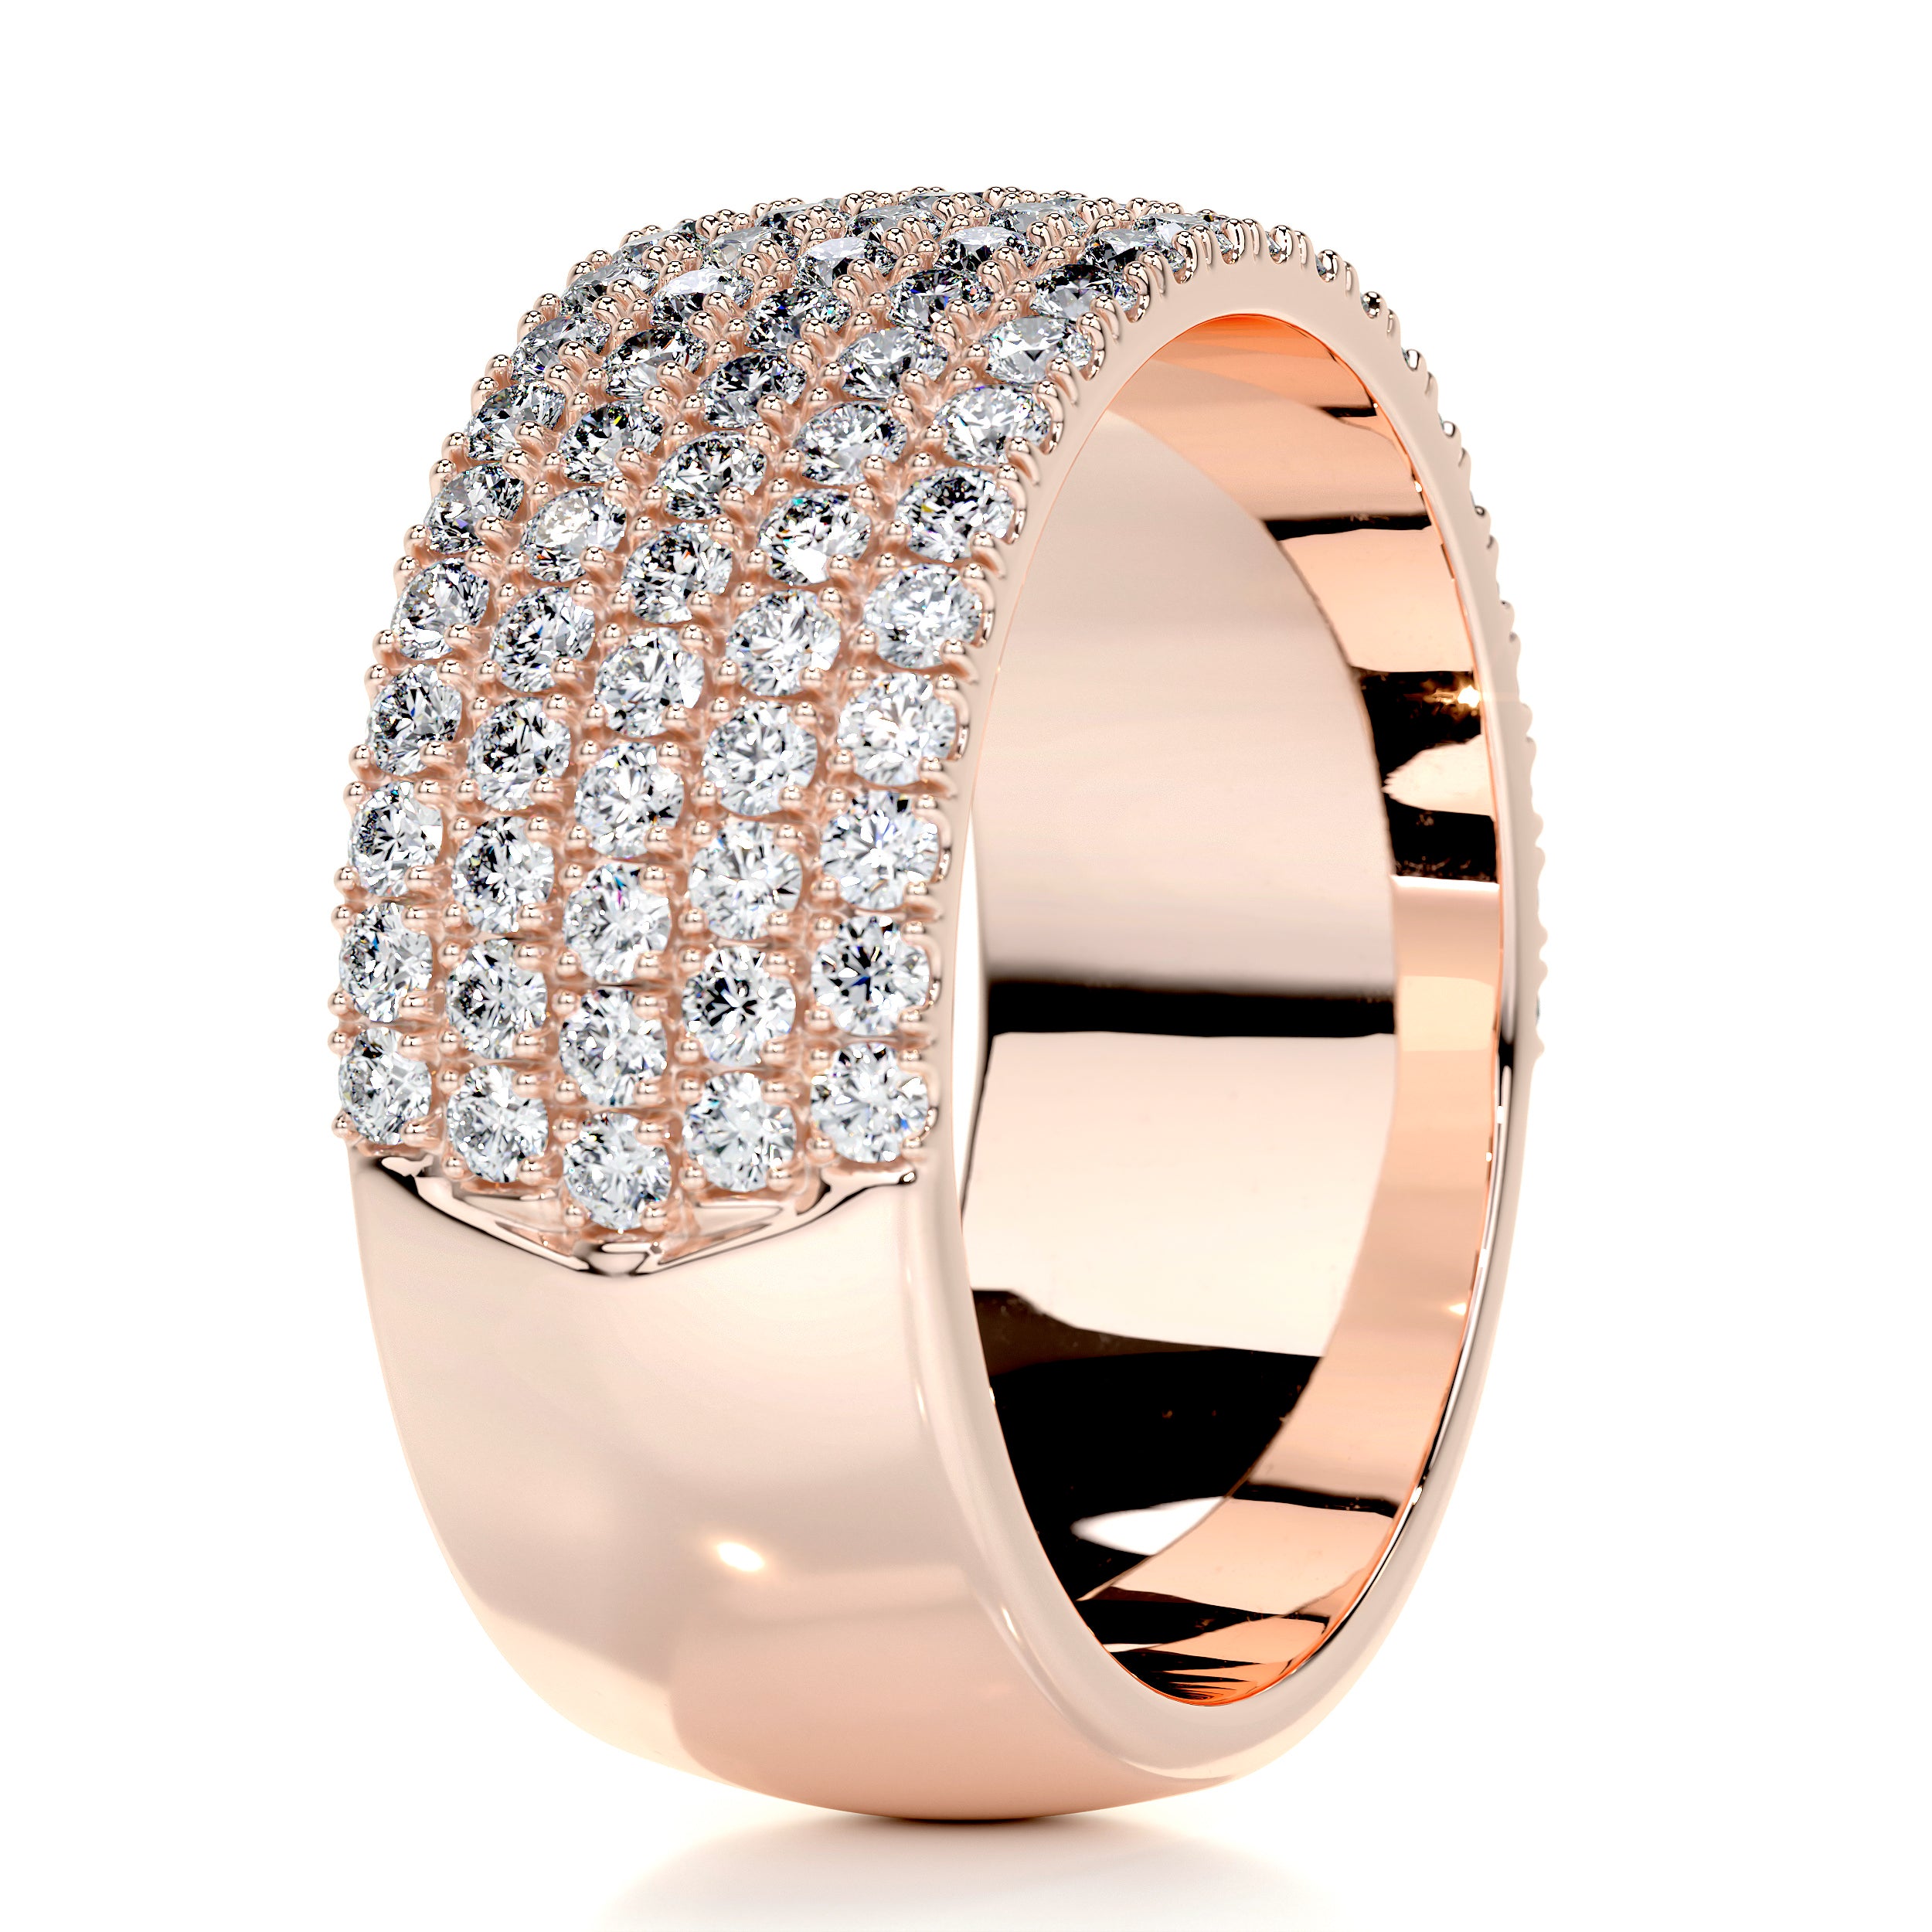 Dakota Diamond Wedding Ring   (1.2 Carat) -14K Rose Gold